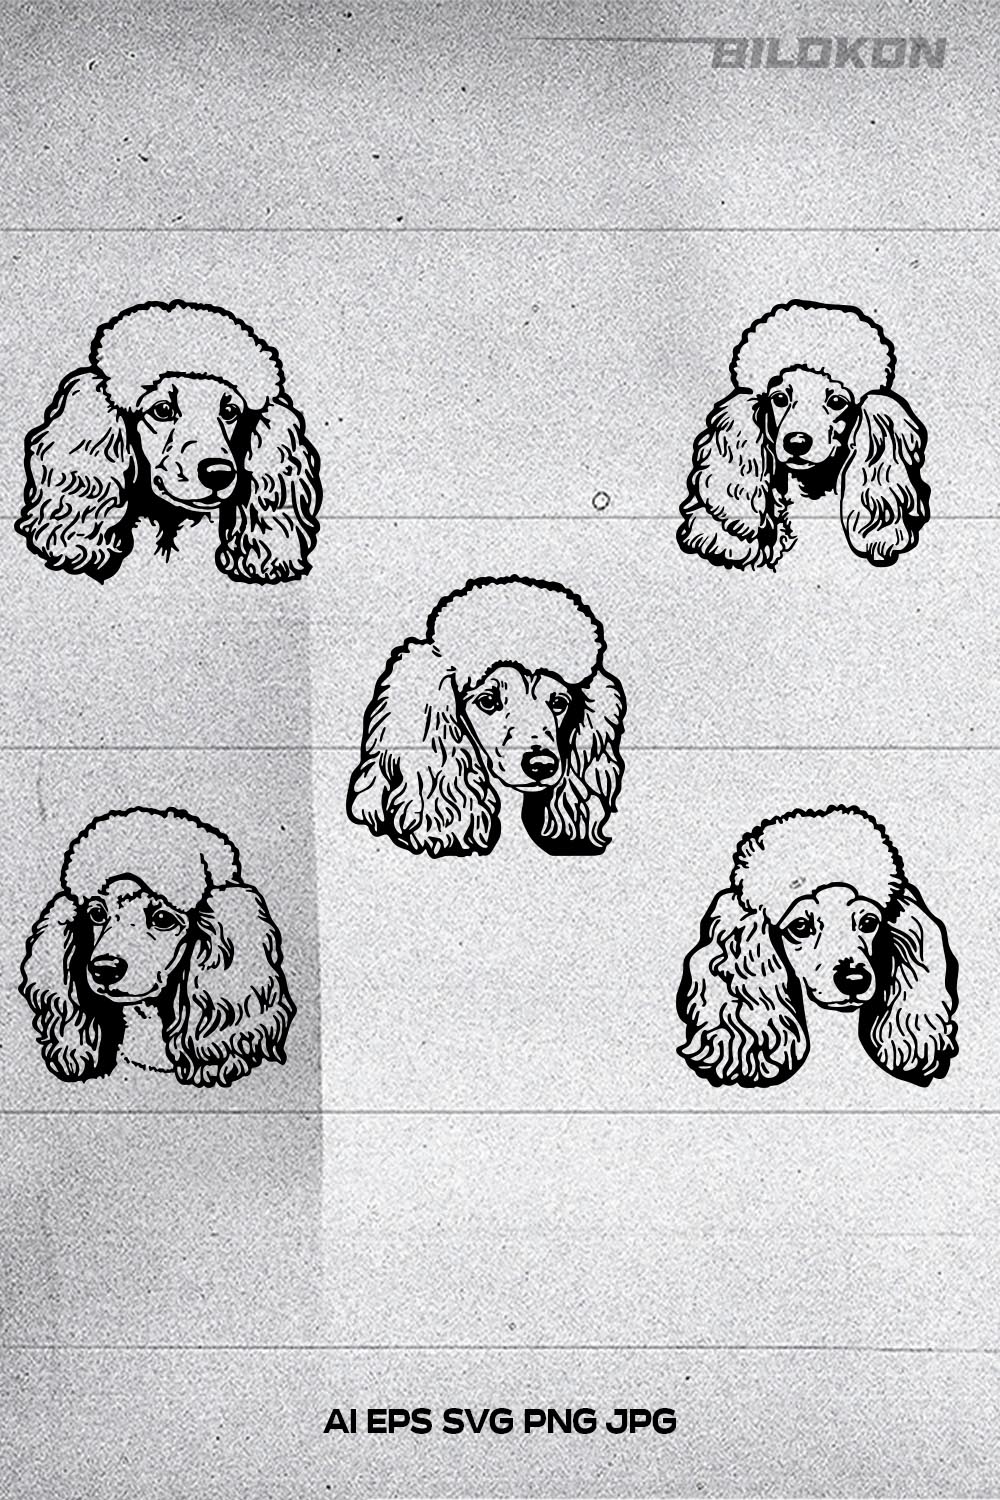 Poodle dog head, SVG, Vector, Illustration, SVG Bundle pinterest preview image.